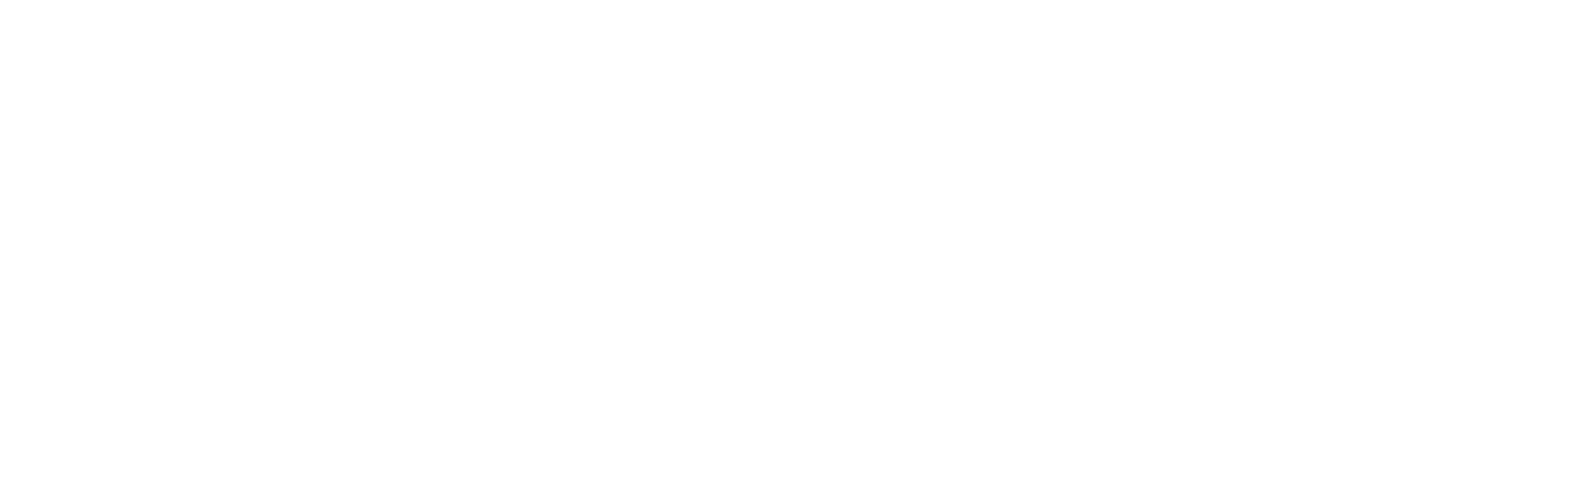 UT Cluj logo